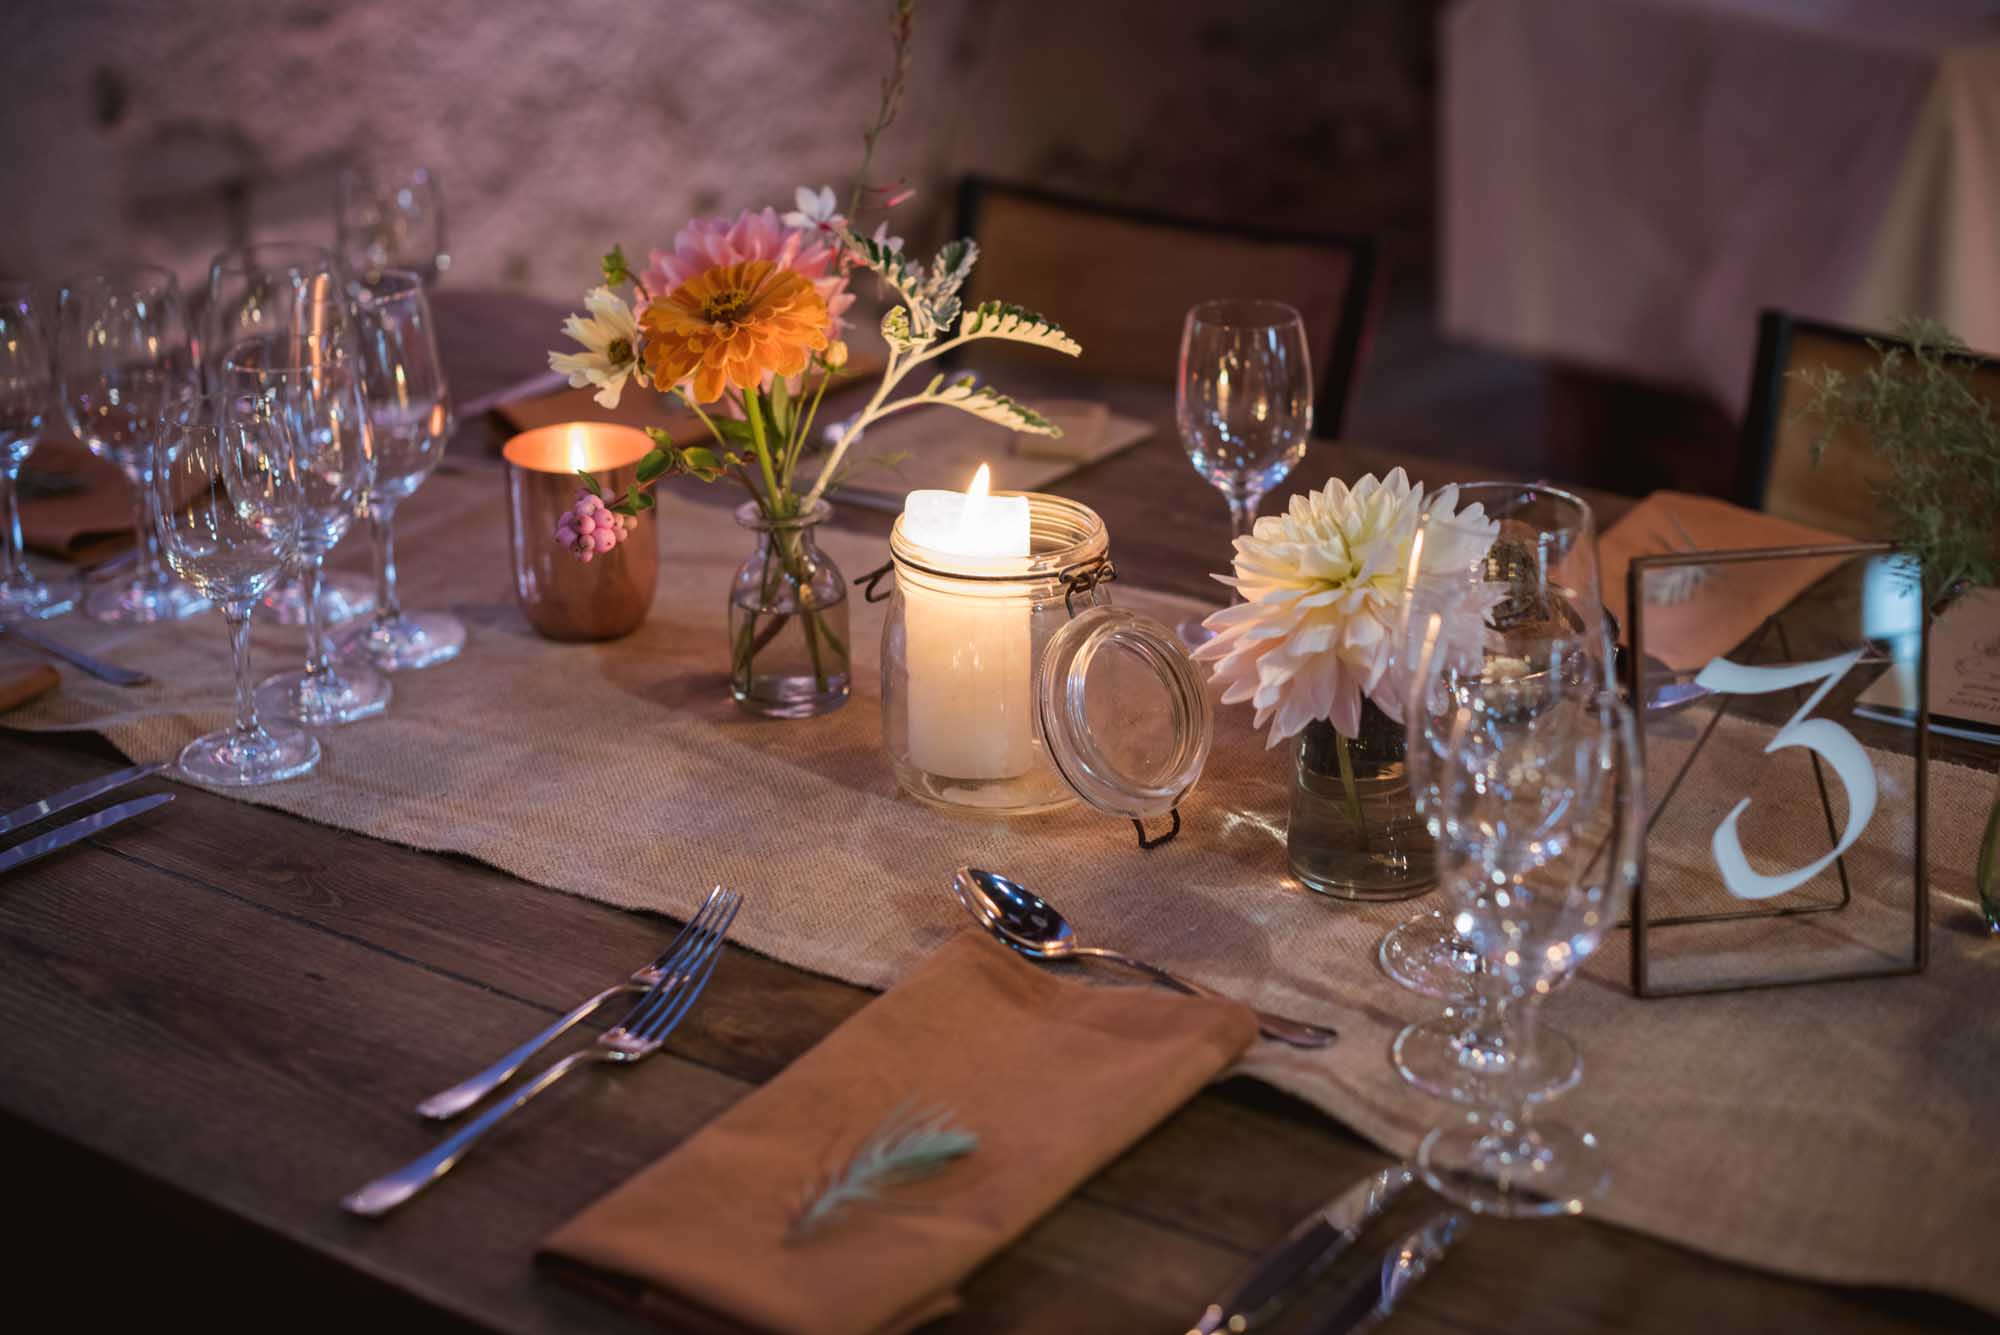 Décoration de table : serviette en lin camel, bougeoirs cuivre et fleurs pêche et rosé